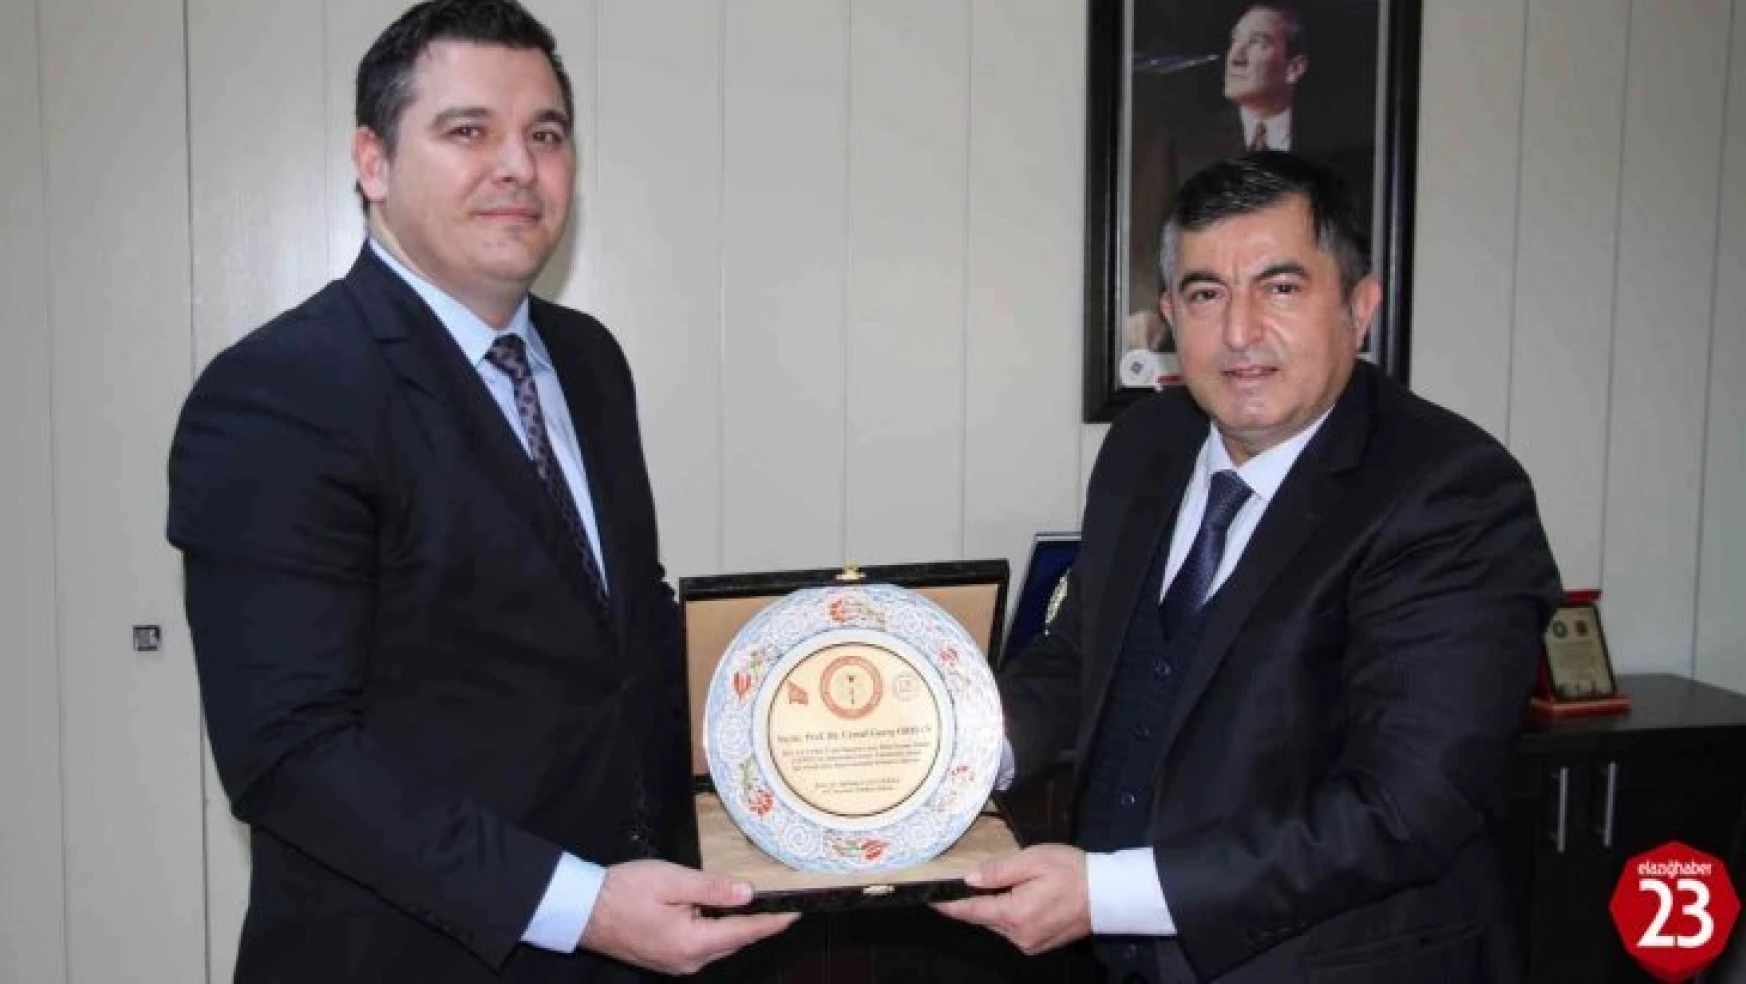 TÜBA-GEBİP ödülüne uzandı, plaketini Cumhurbaşkanı Erdoğan'dan alacak